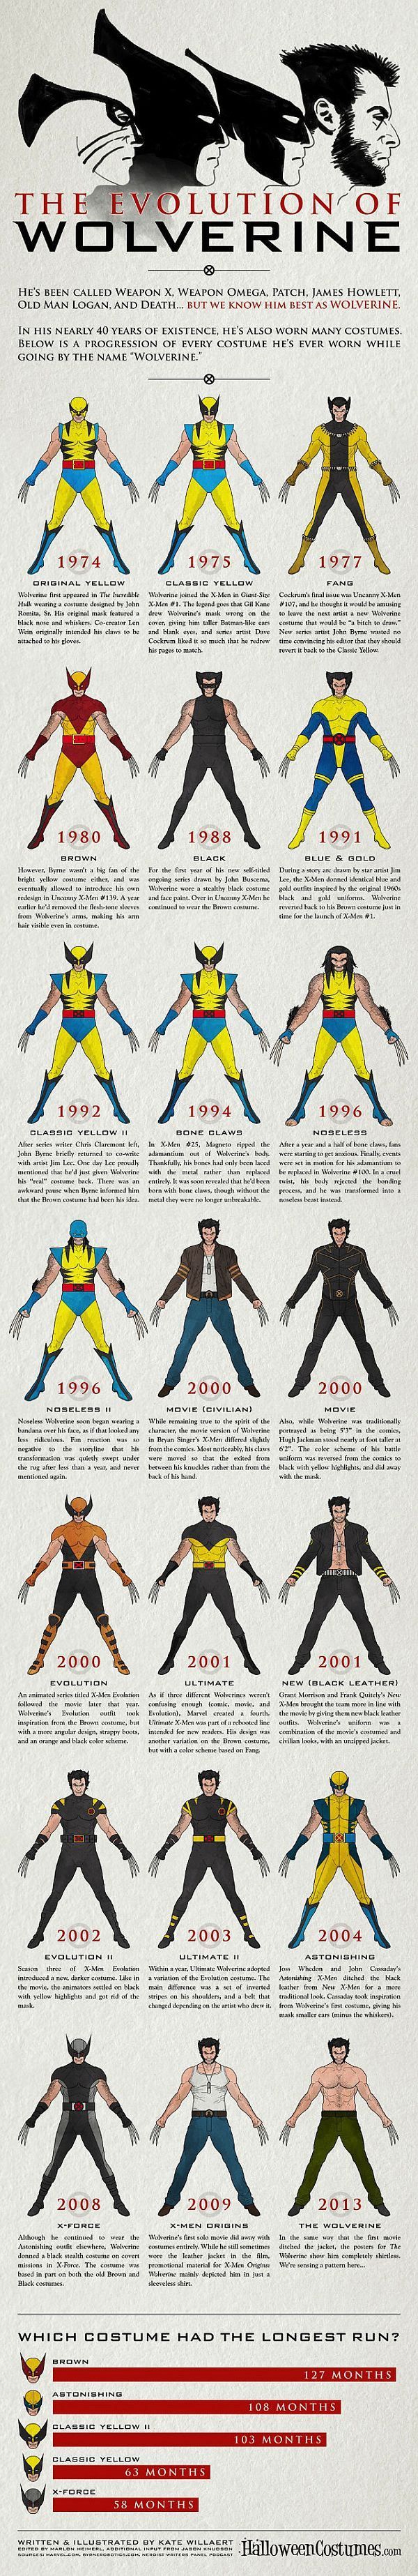 A Evolução do Wolverine